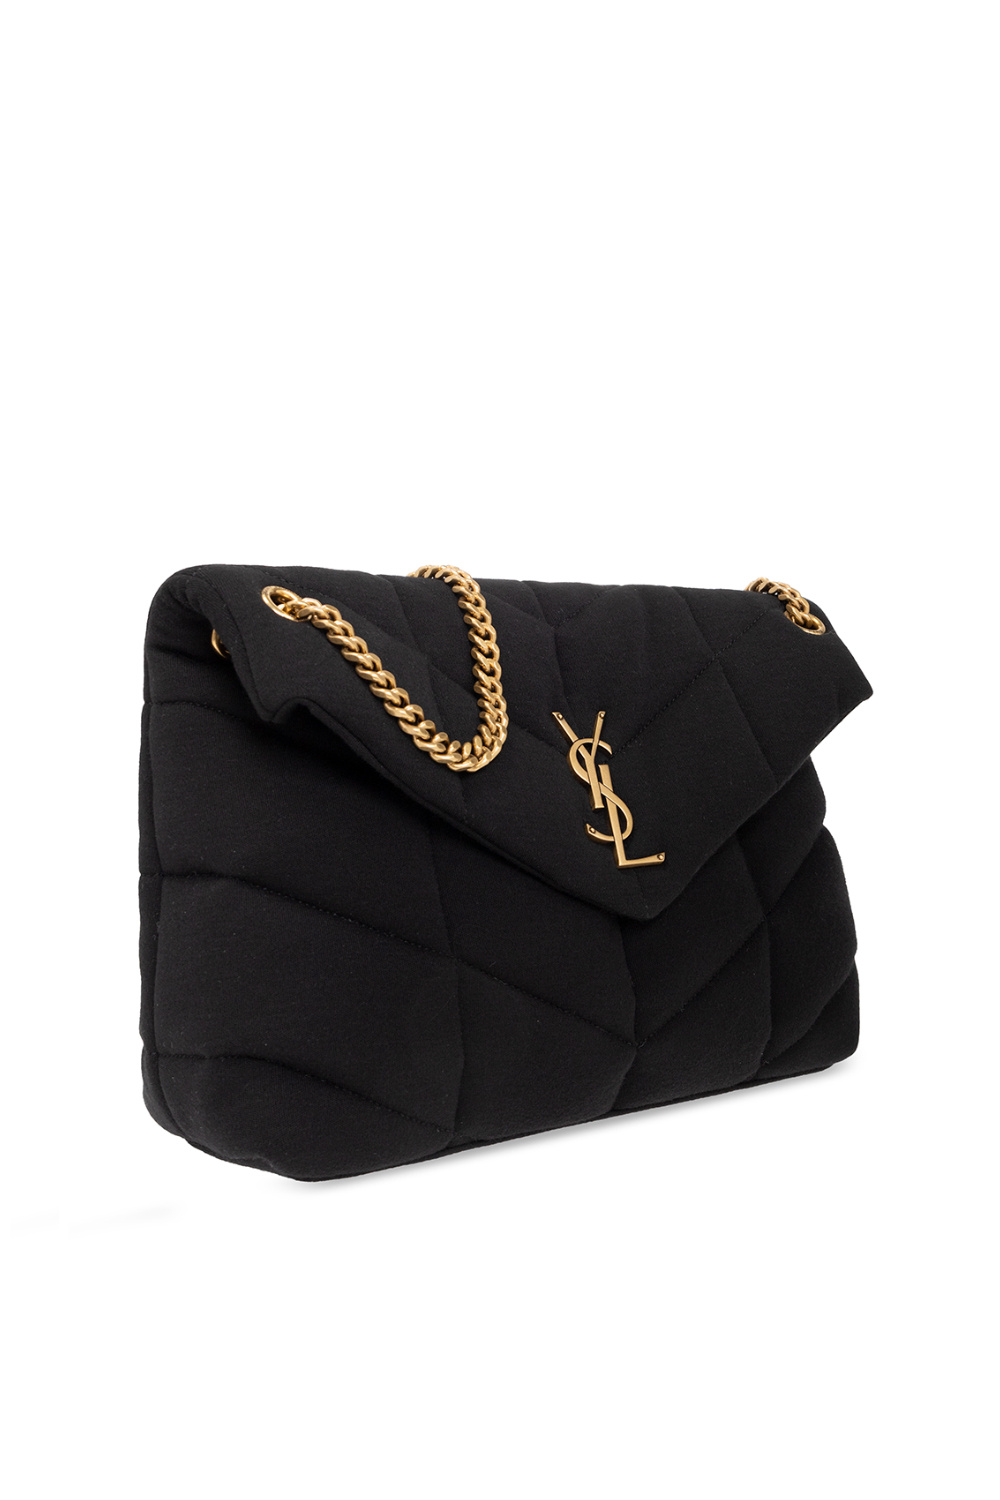 Saint Laurent ‘Puffer Medium’ bag